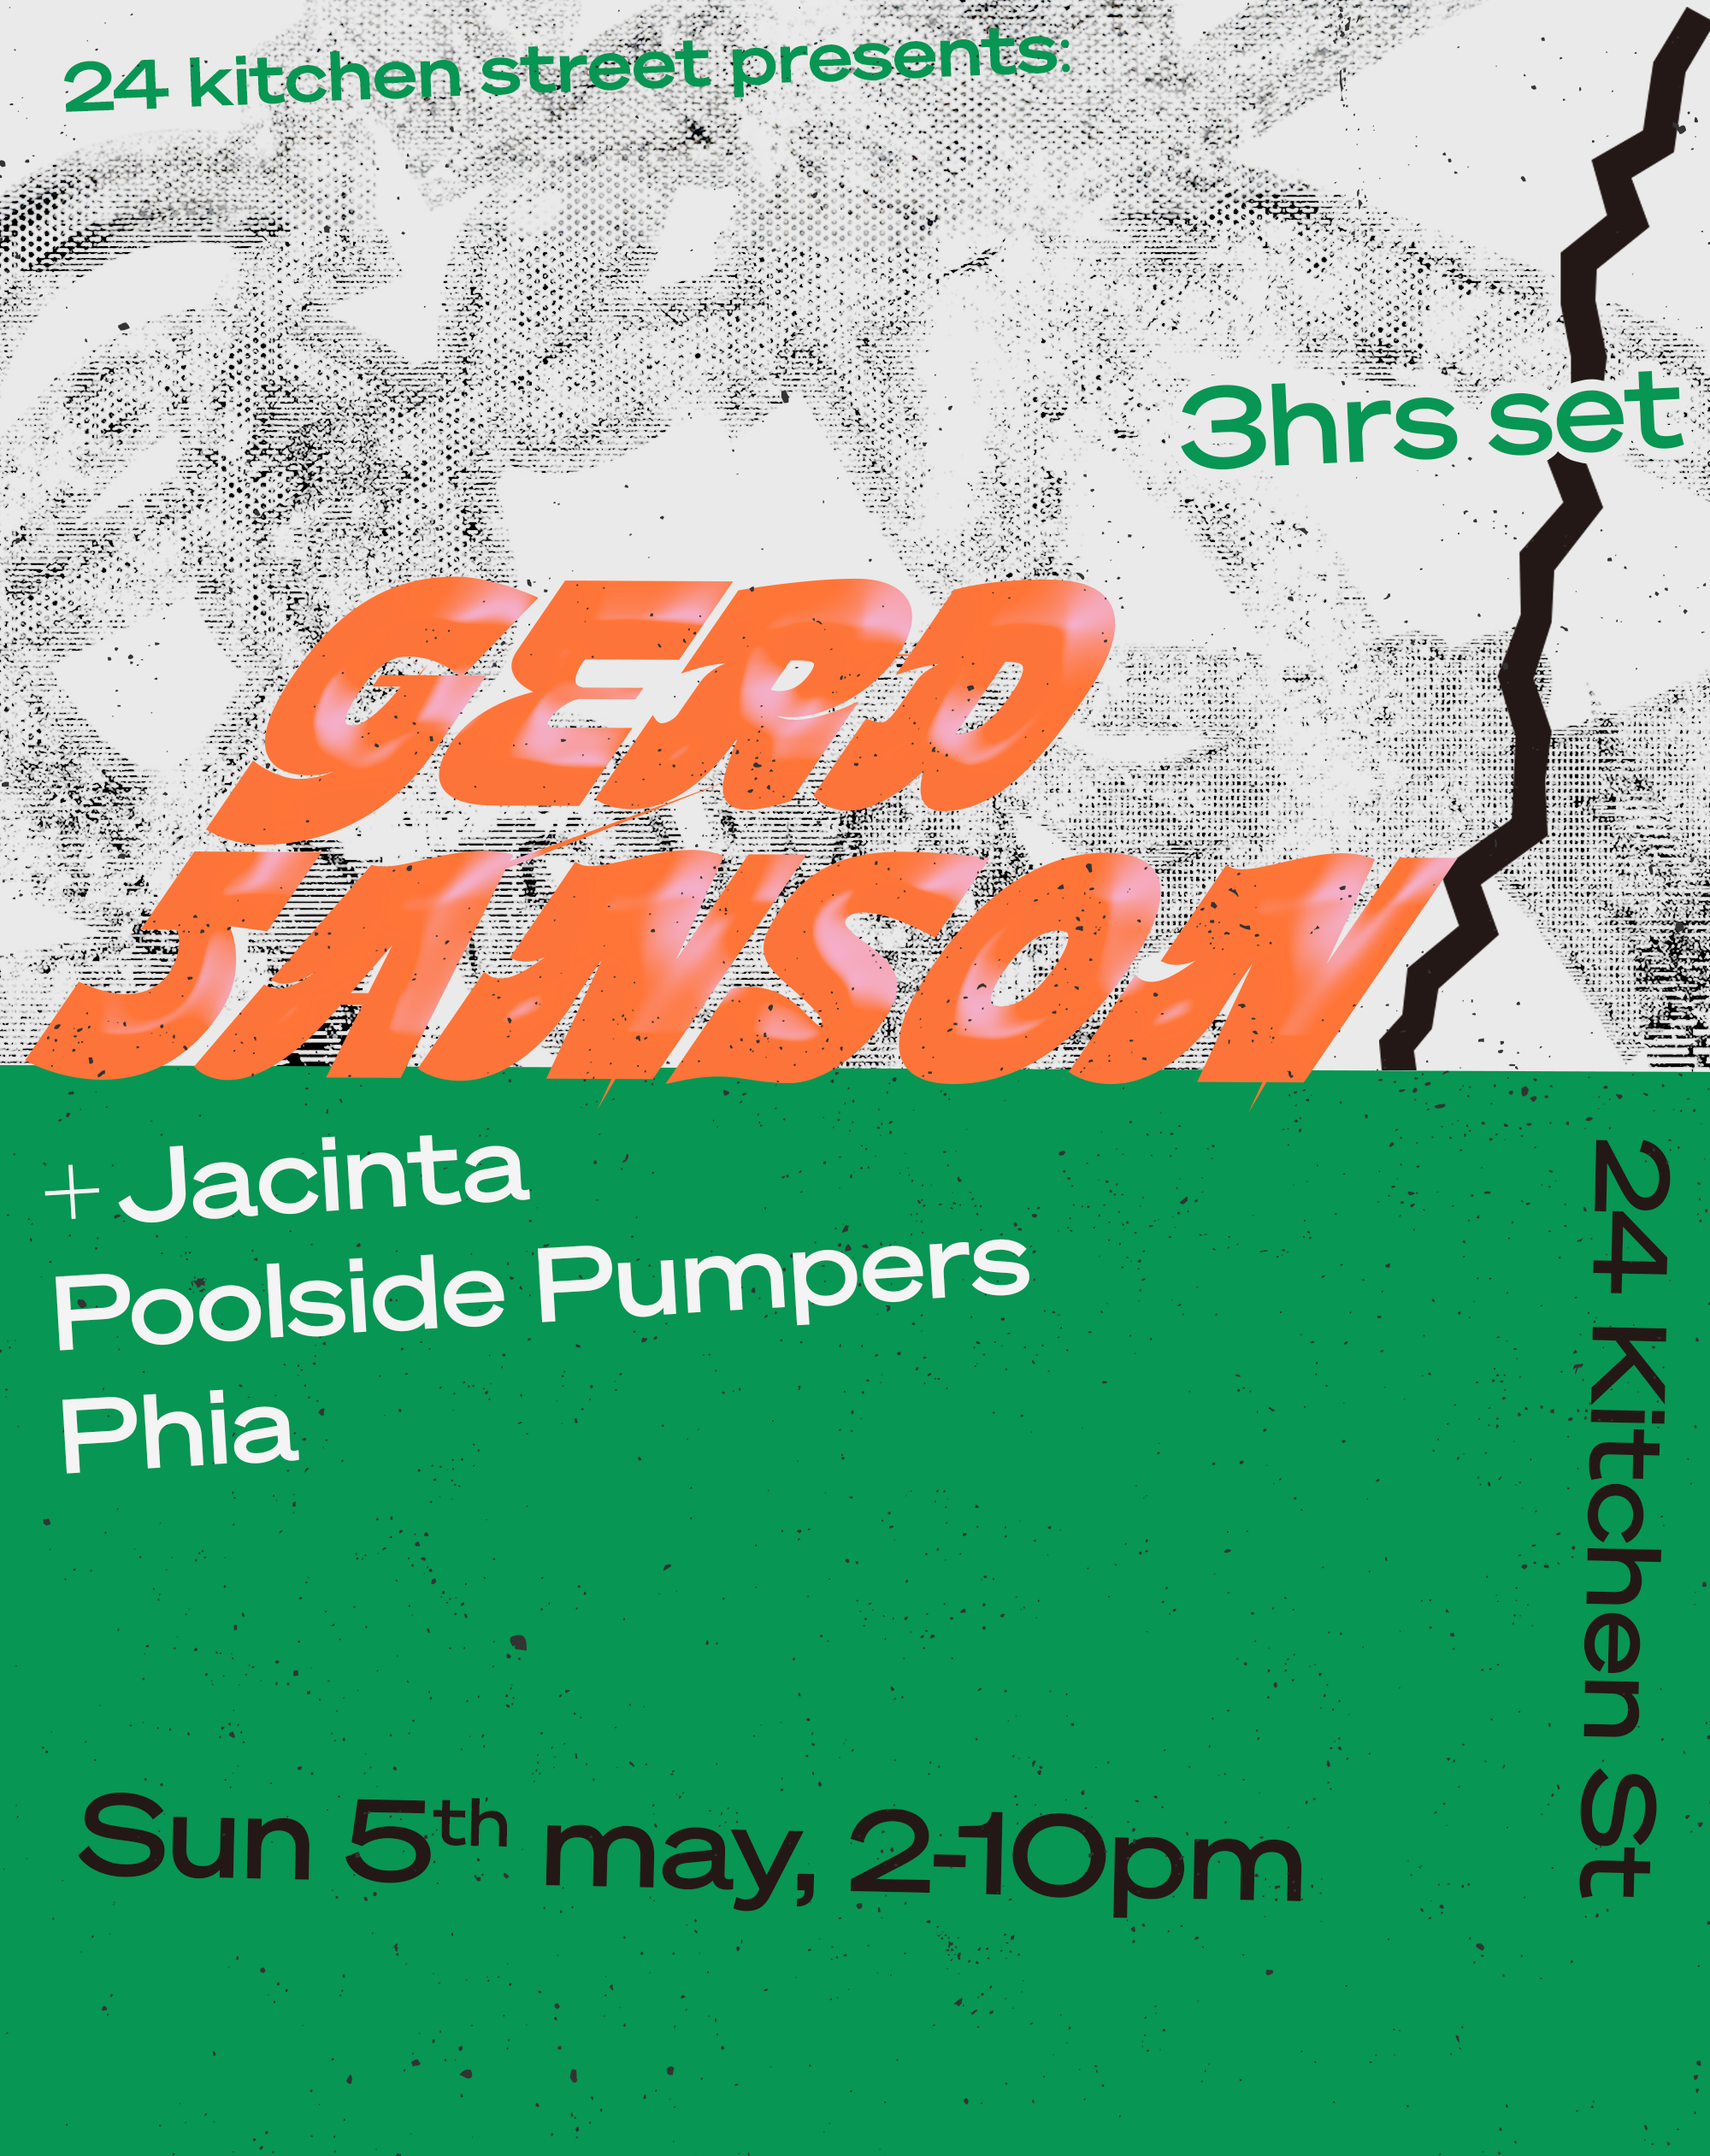 Gerd Janson, Jacinta, Poolside Pumpers & Phia - Página frontal